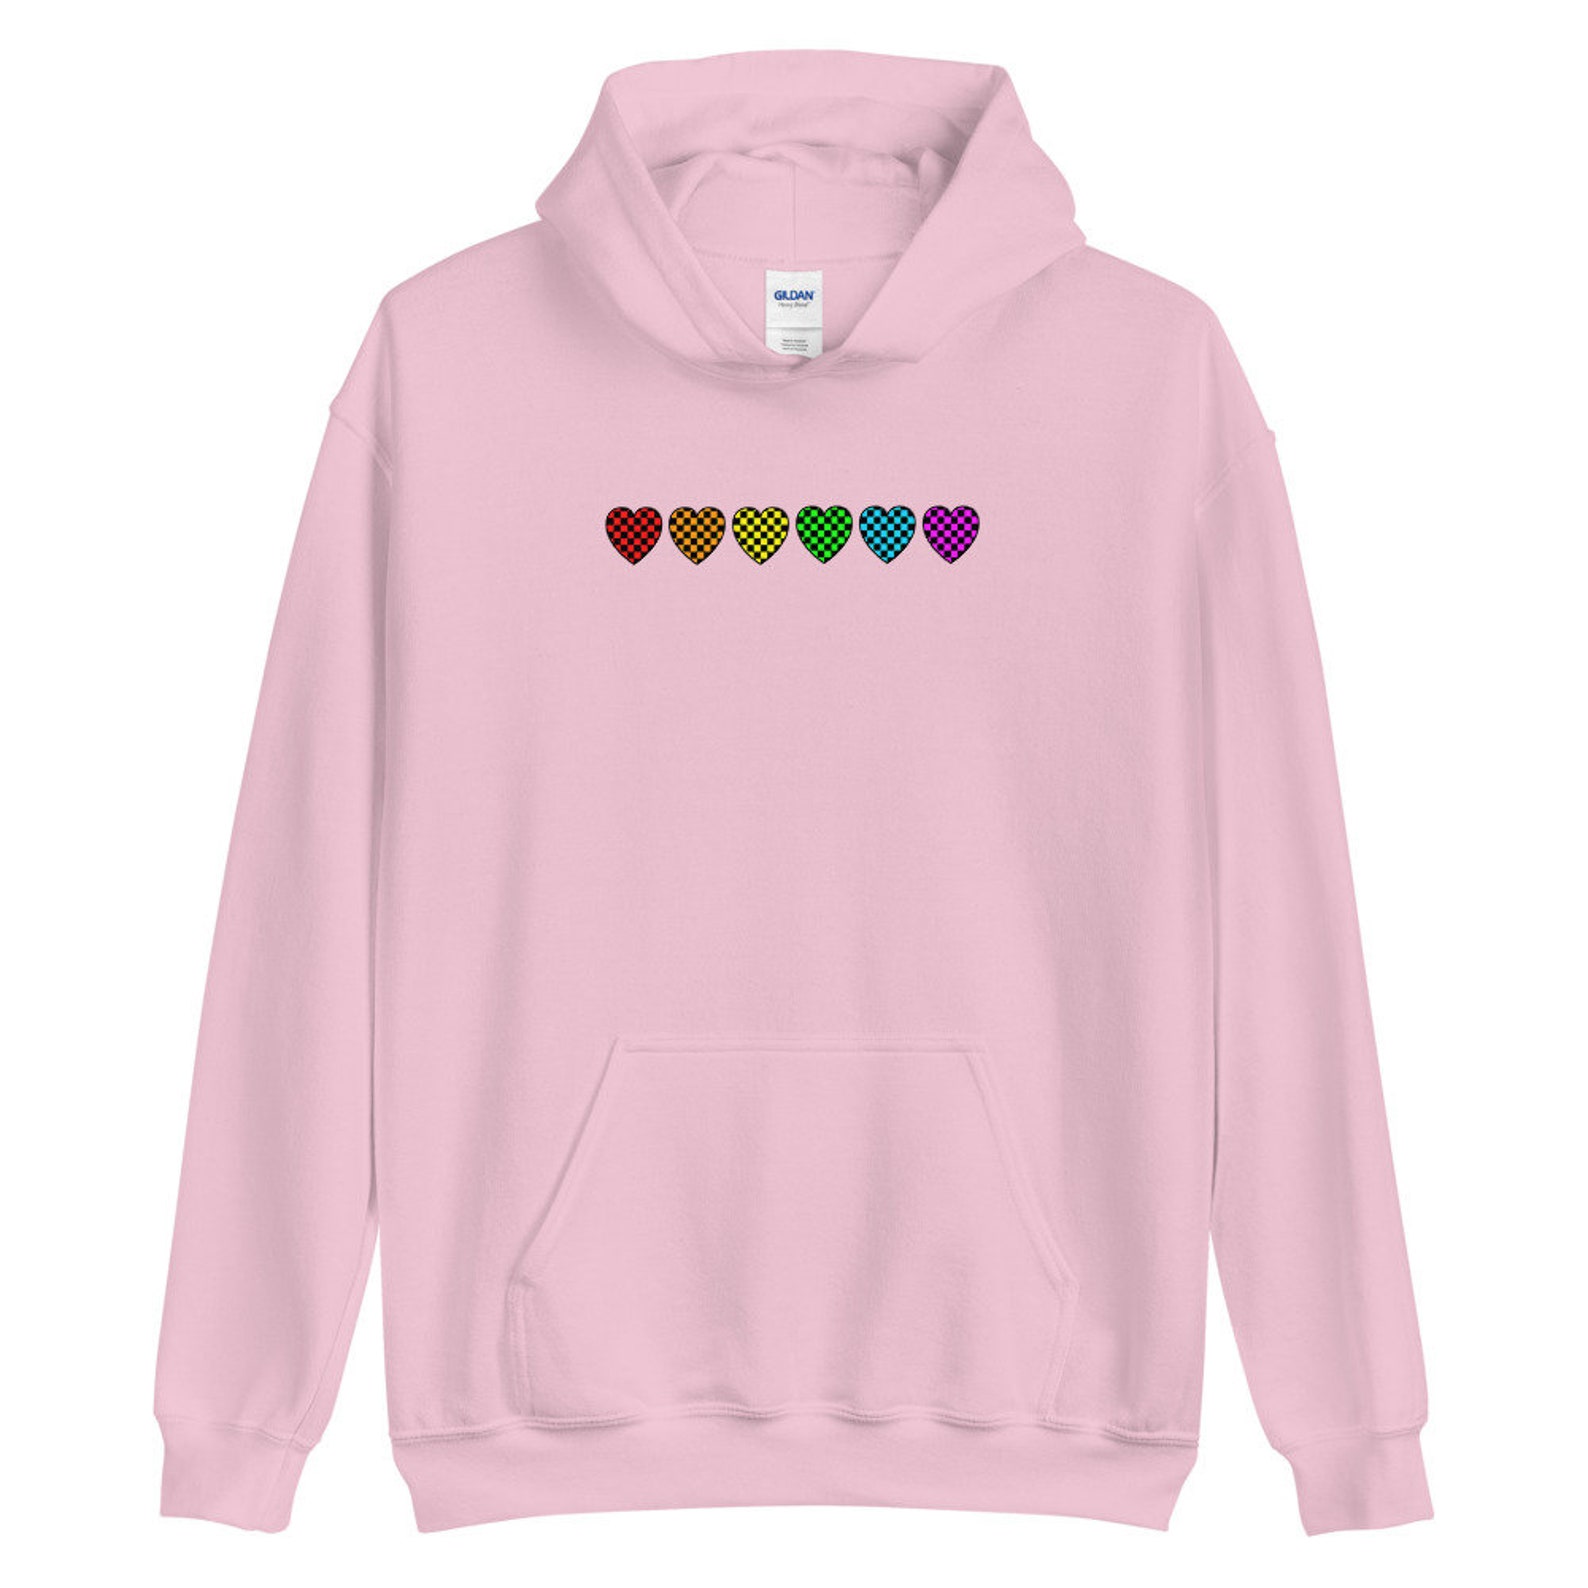 Kidcore Rainbow Heart Hoodie Alt Clothing Indie Hoodie | Etsy